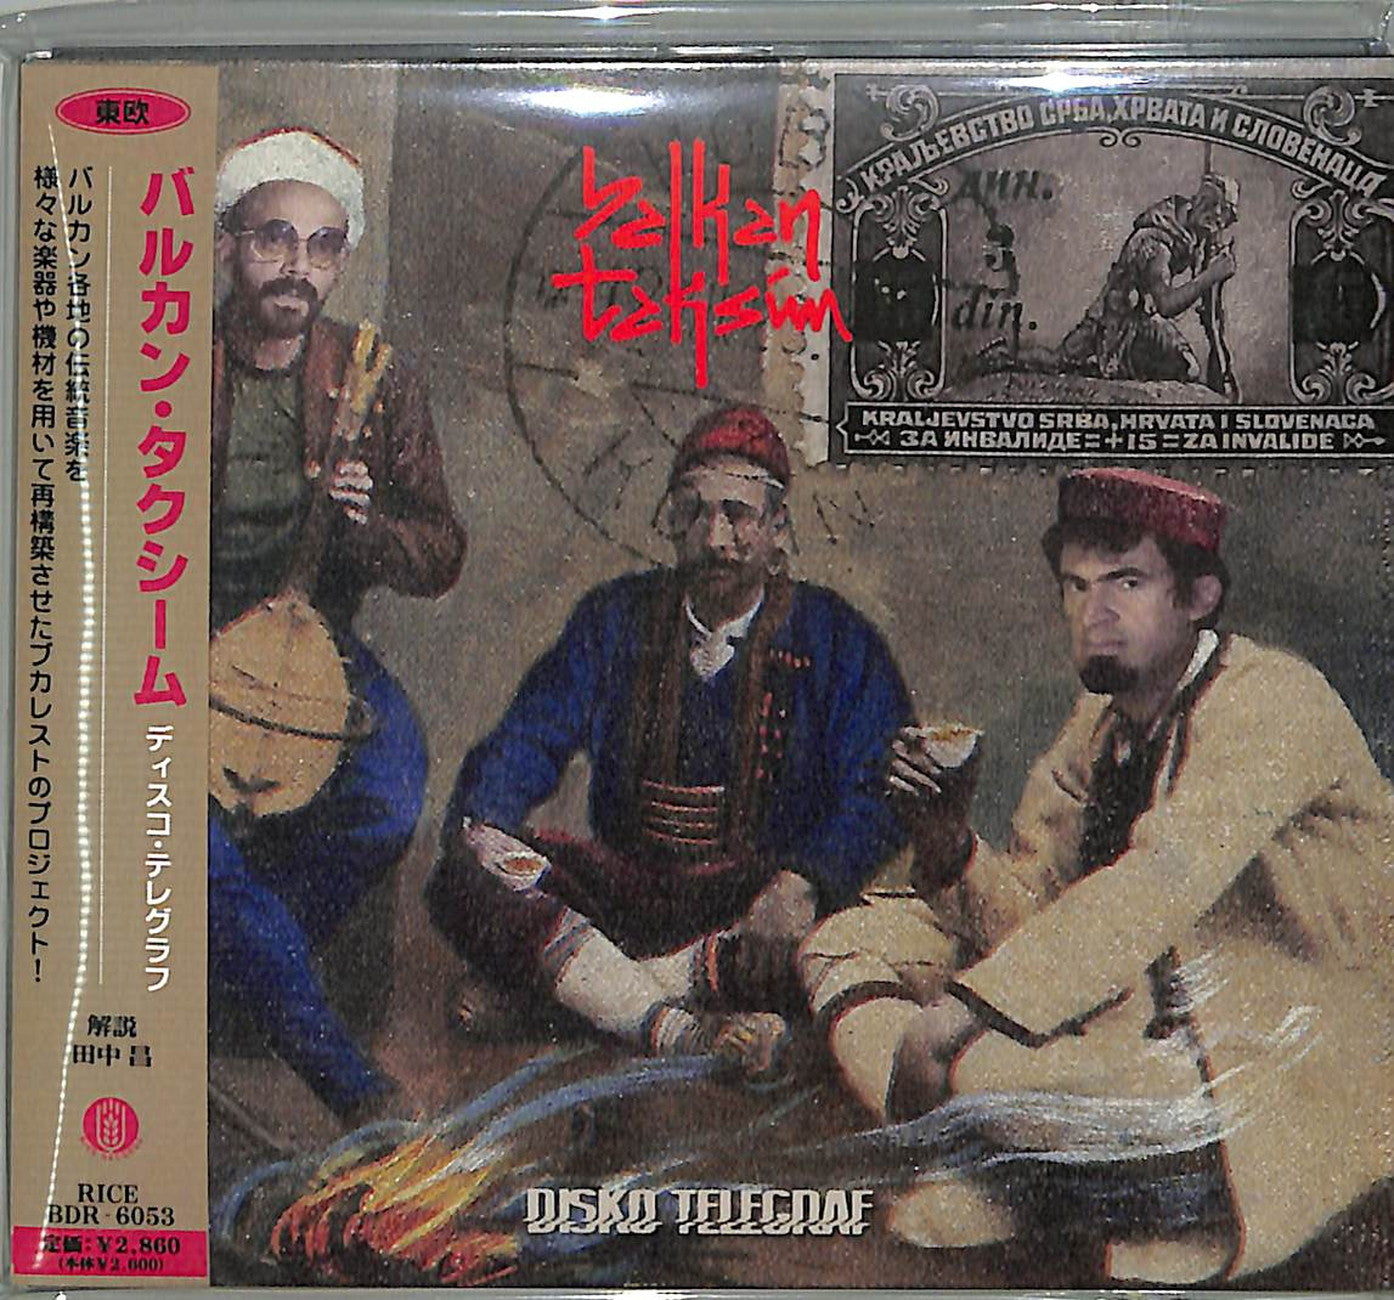 Balkan Taksim - Disko Telegraf - Japan CD